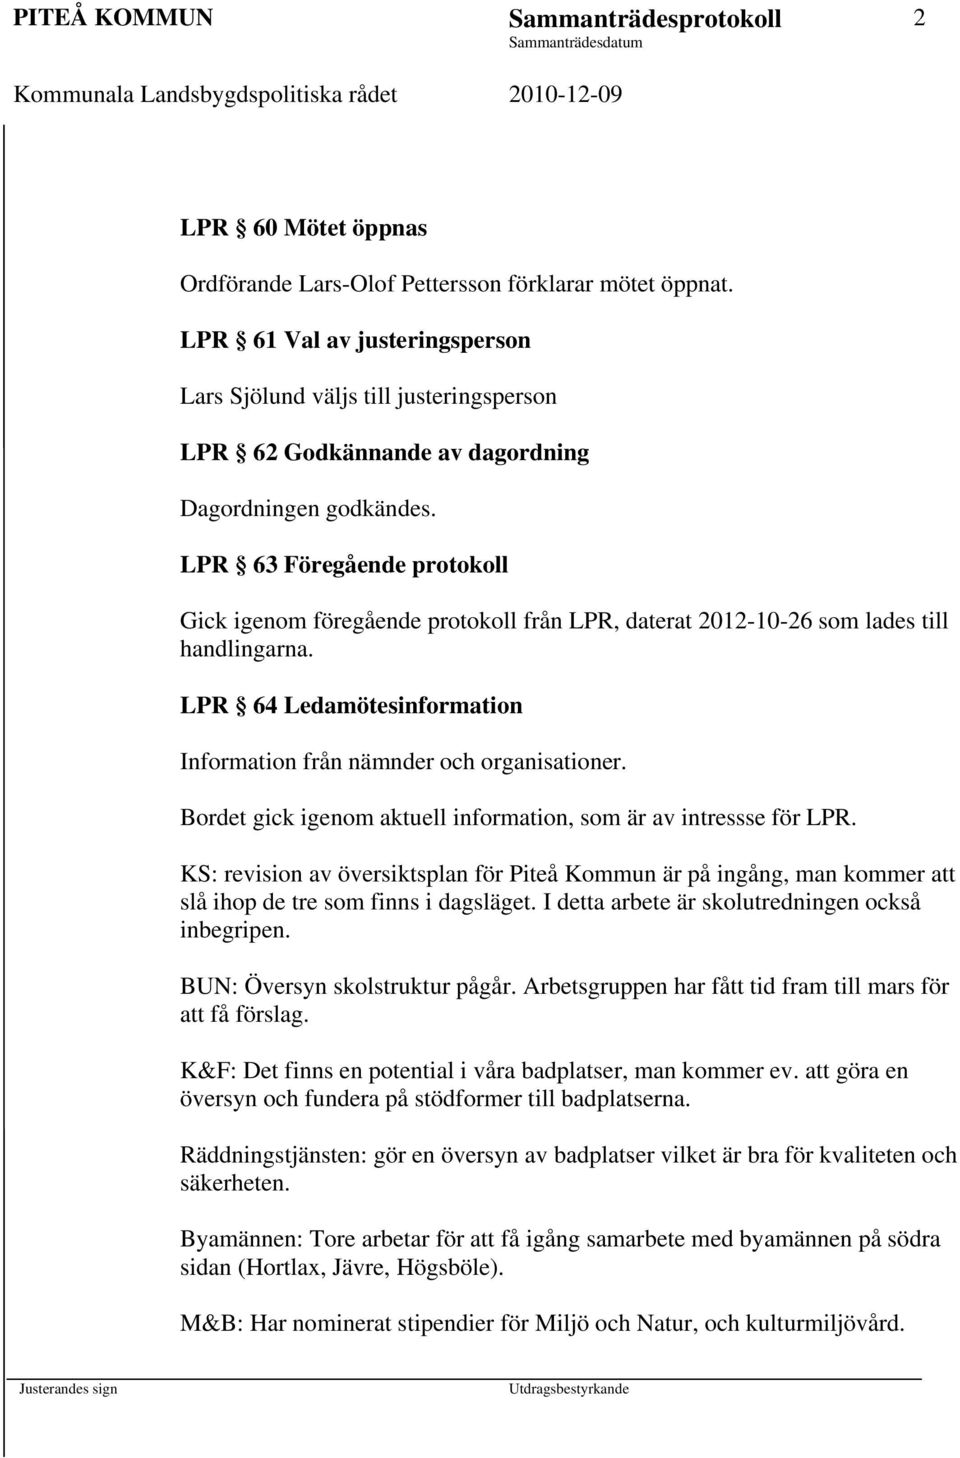 LPR 63 Föregående protokoll Gick igenom föregående protokoll från LPR, daterat 2012-10-26 som lades till handlingarna. LPR 64 Ledamötesinformation Information från nämnder och organisationer.